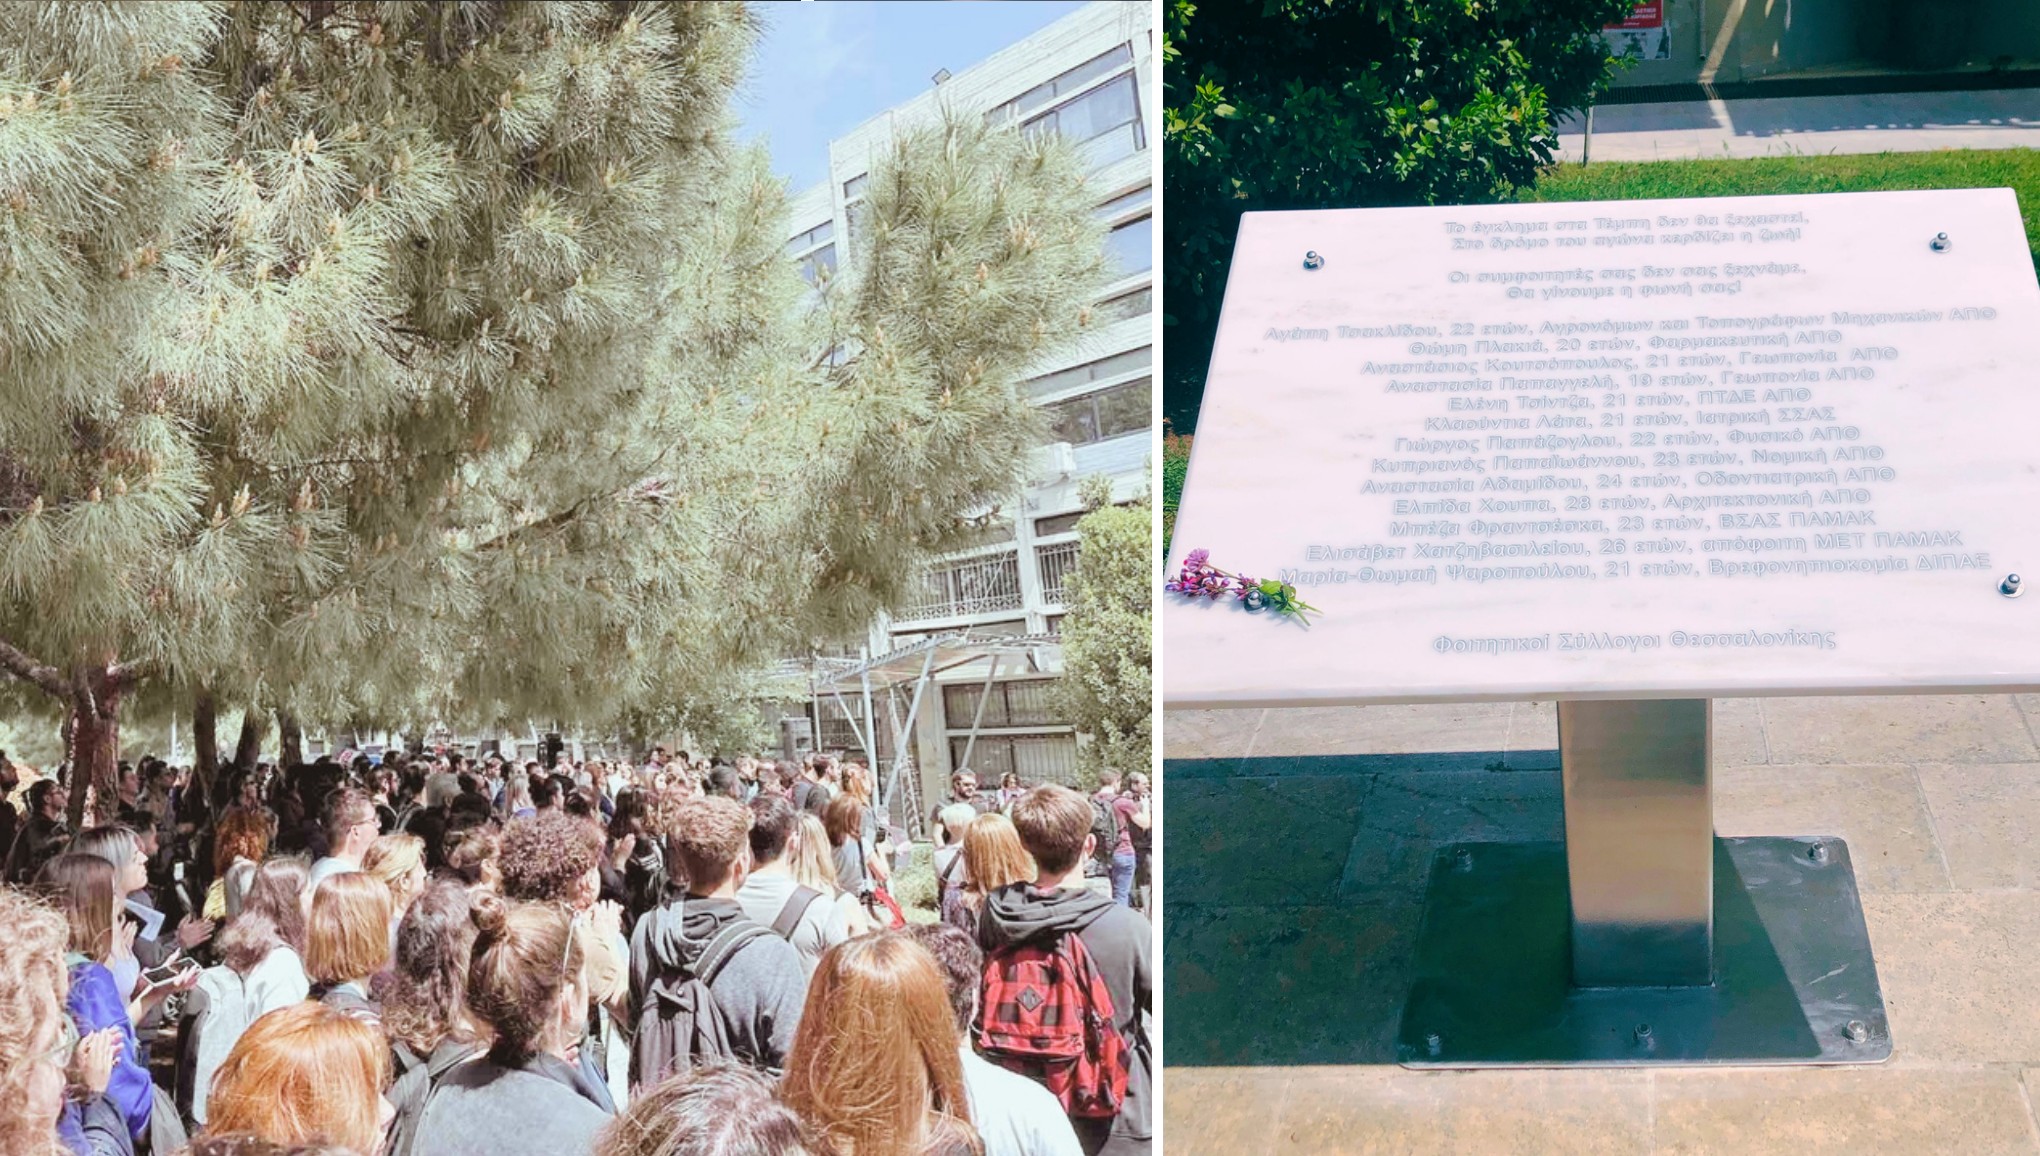  Μνημείο εντός του ΑΠΘ από φοιτητές για τους νεκρούς συμφοιτητές τους για το έγκλημα στα Τέμπη (ΦΩΤΟ)